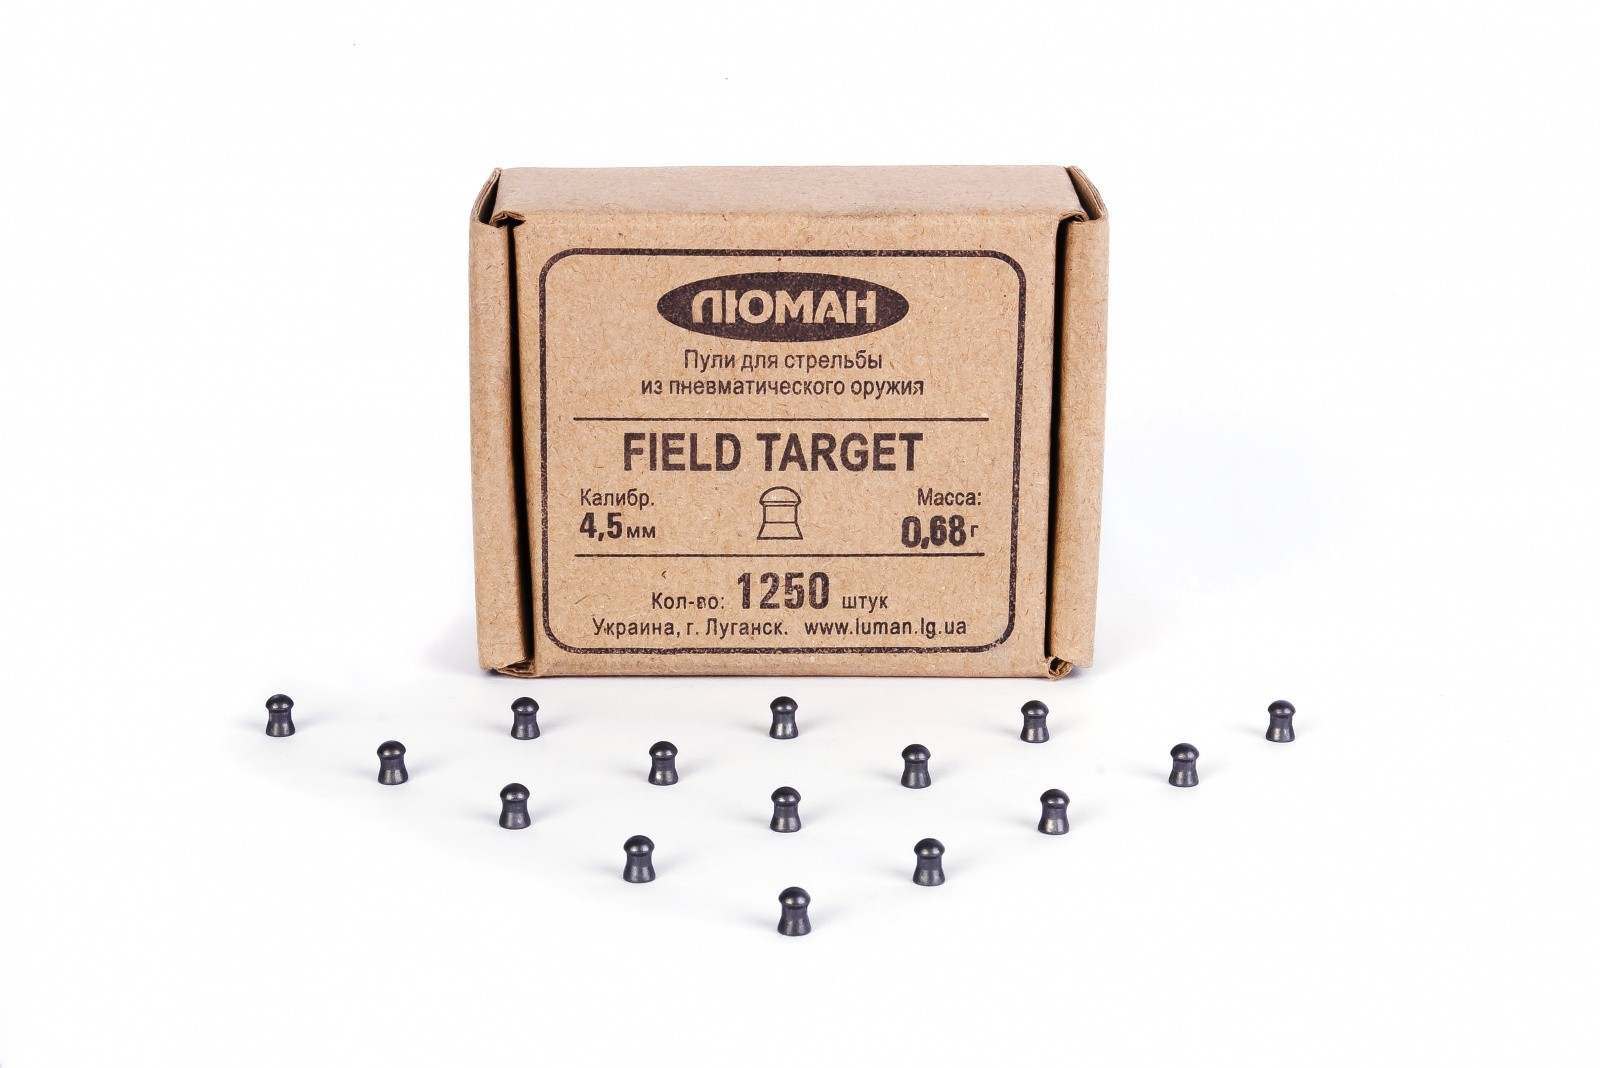 Пульки Люман Field Target 0,68 гр 1250 шт - фото 1